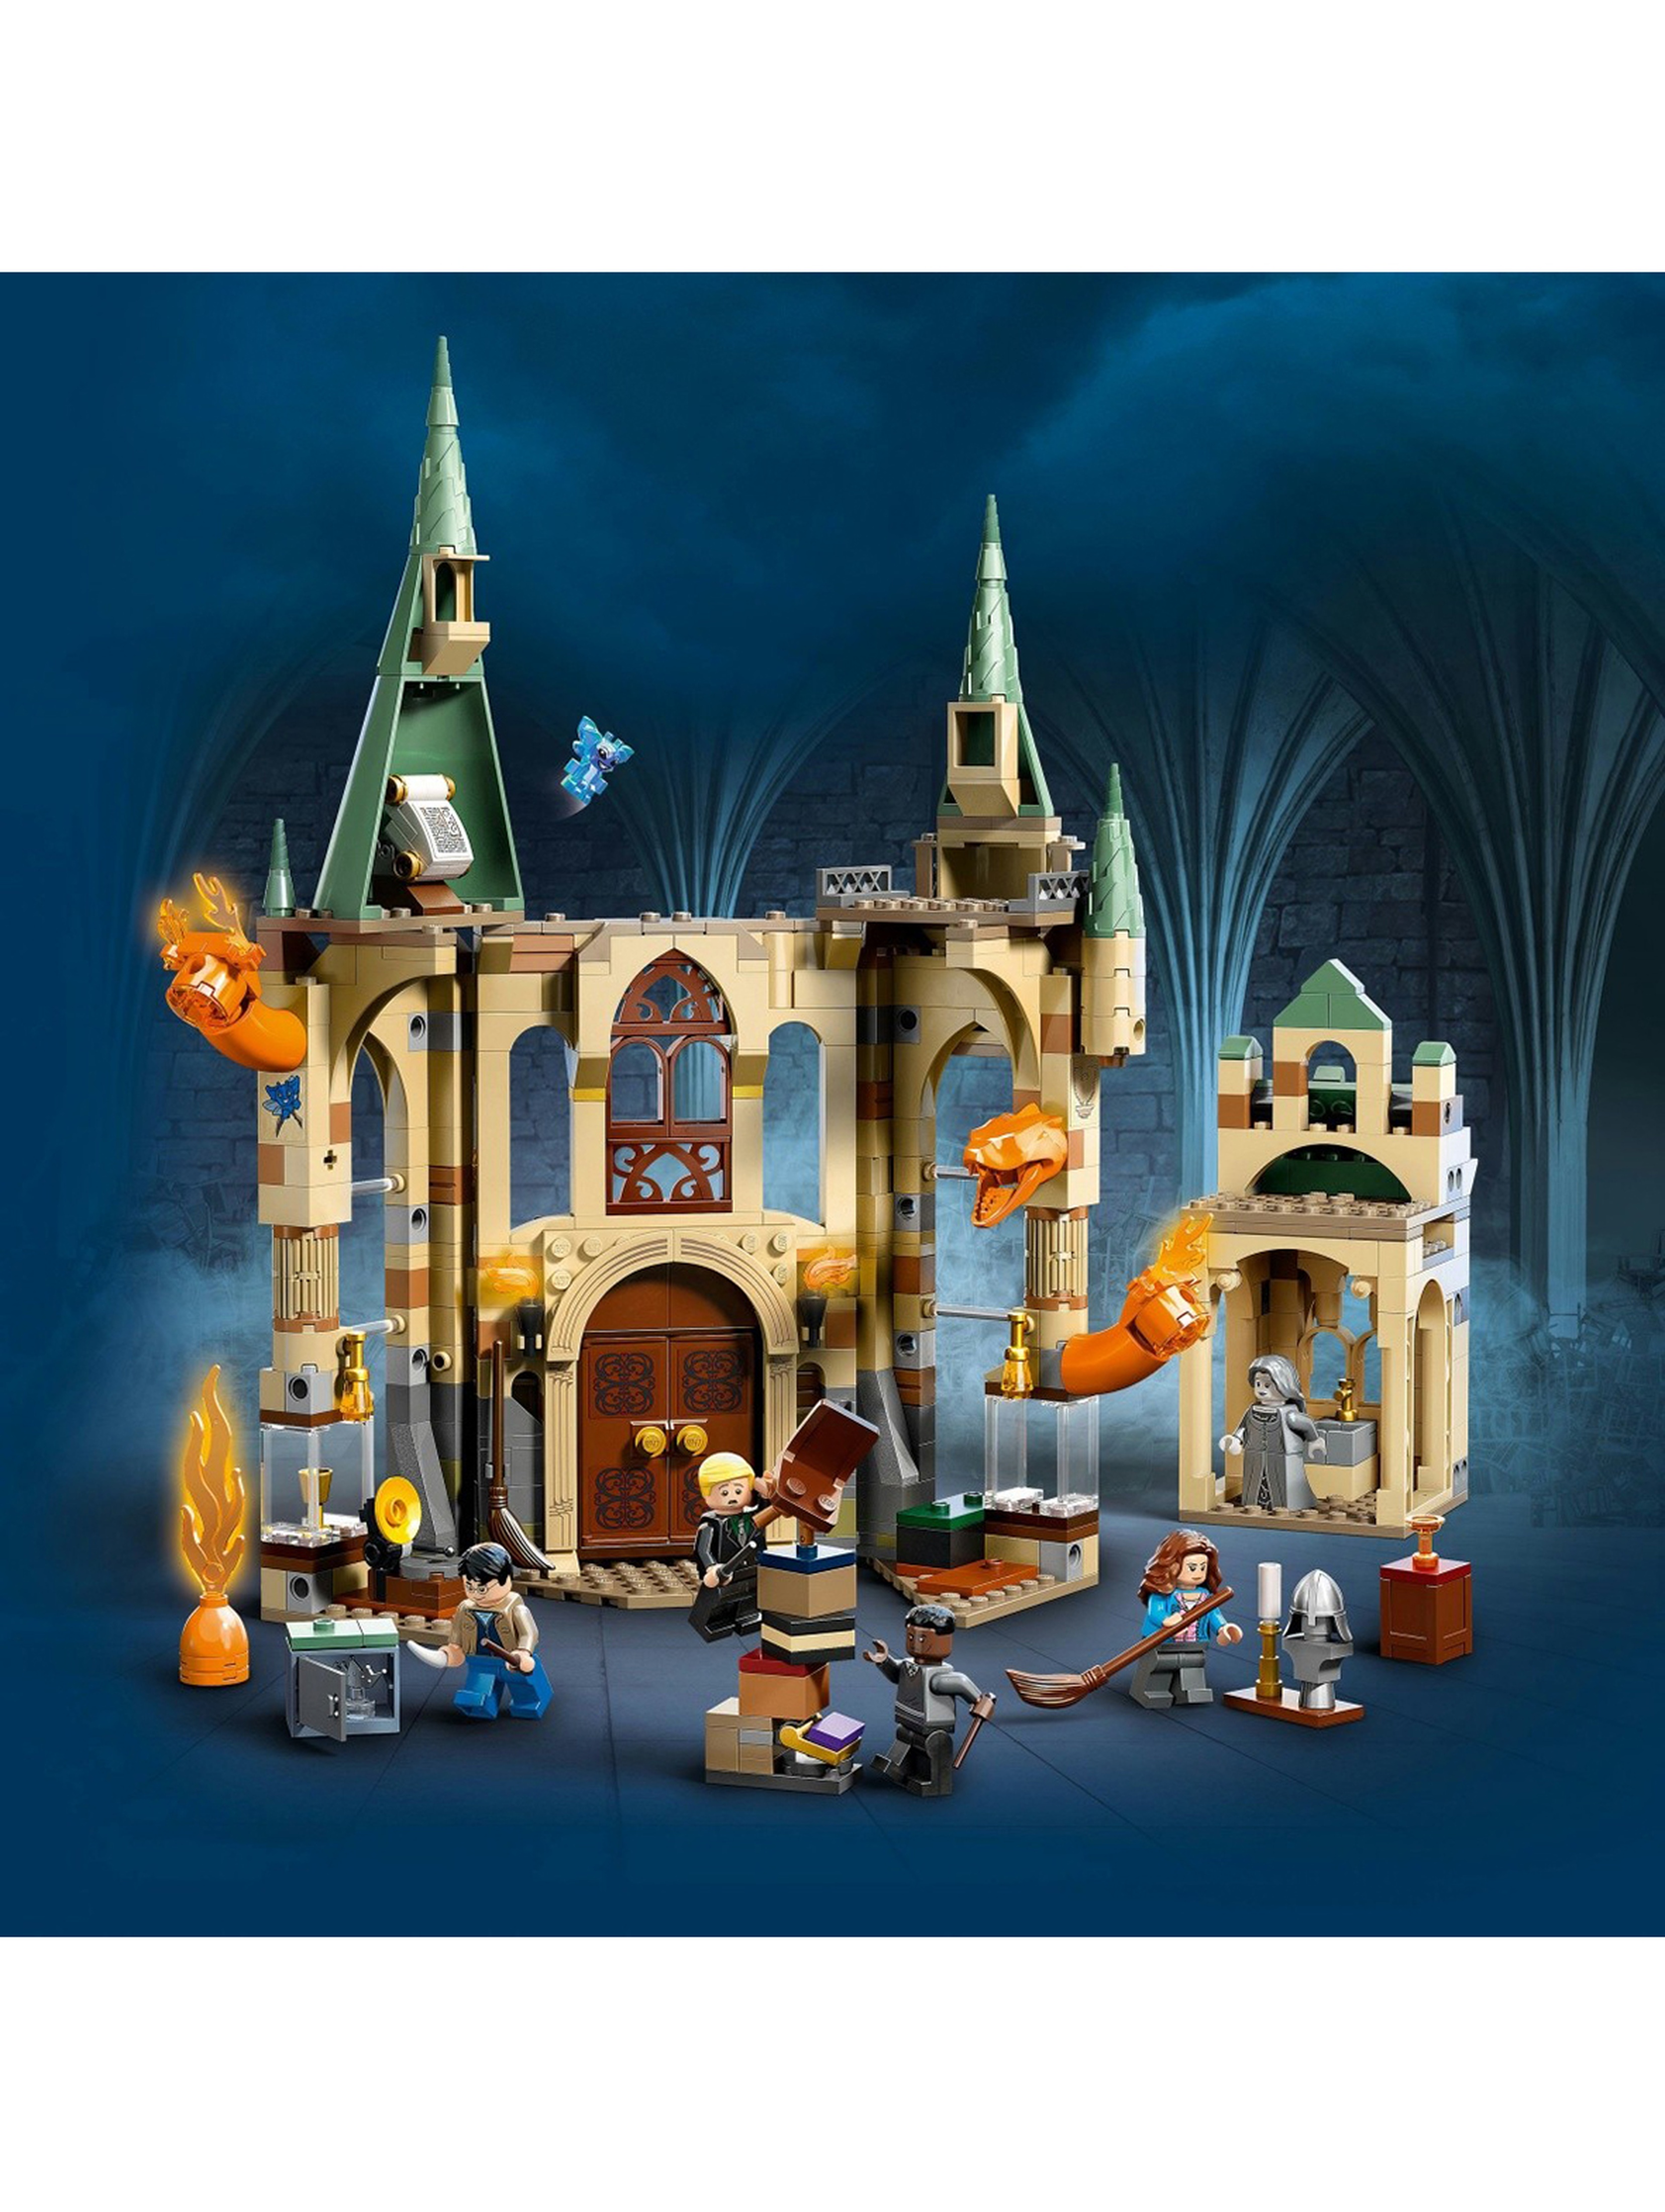 Klocki LEGO Harry Potter 76413 Hogwart: Pokój życzeń - 587 elementów, wiek 8 +